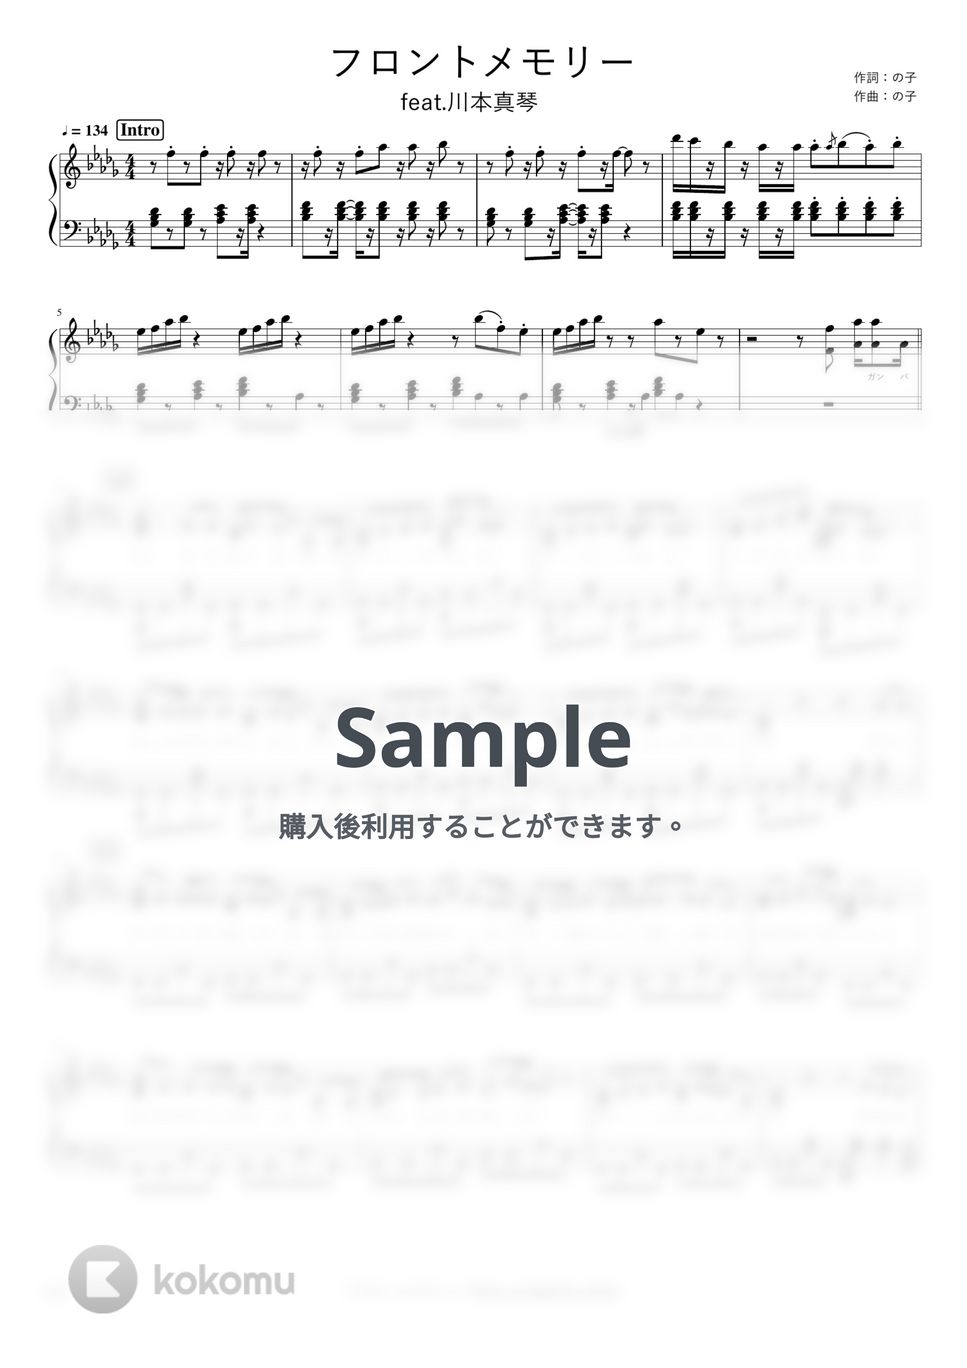 神聖かまってちゃん - フロントメモリー feat.川本真琴 by pianomikan